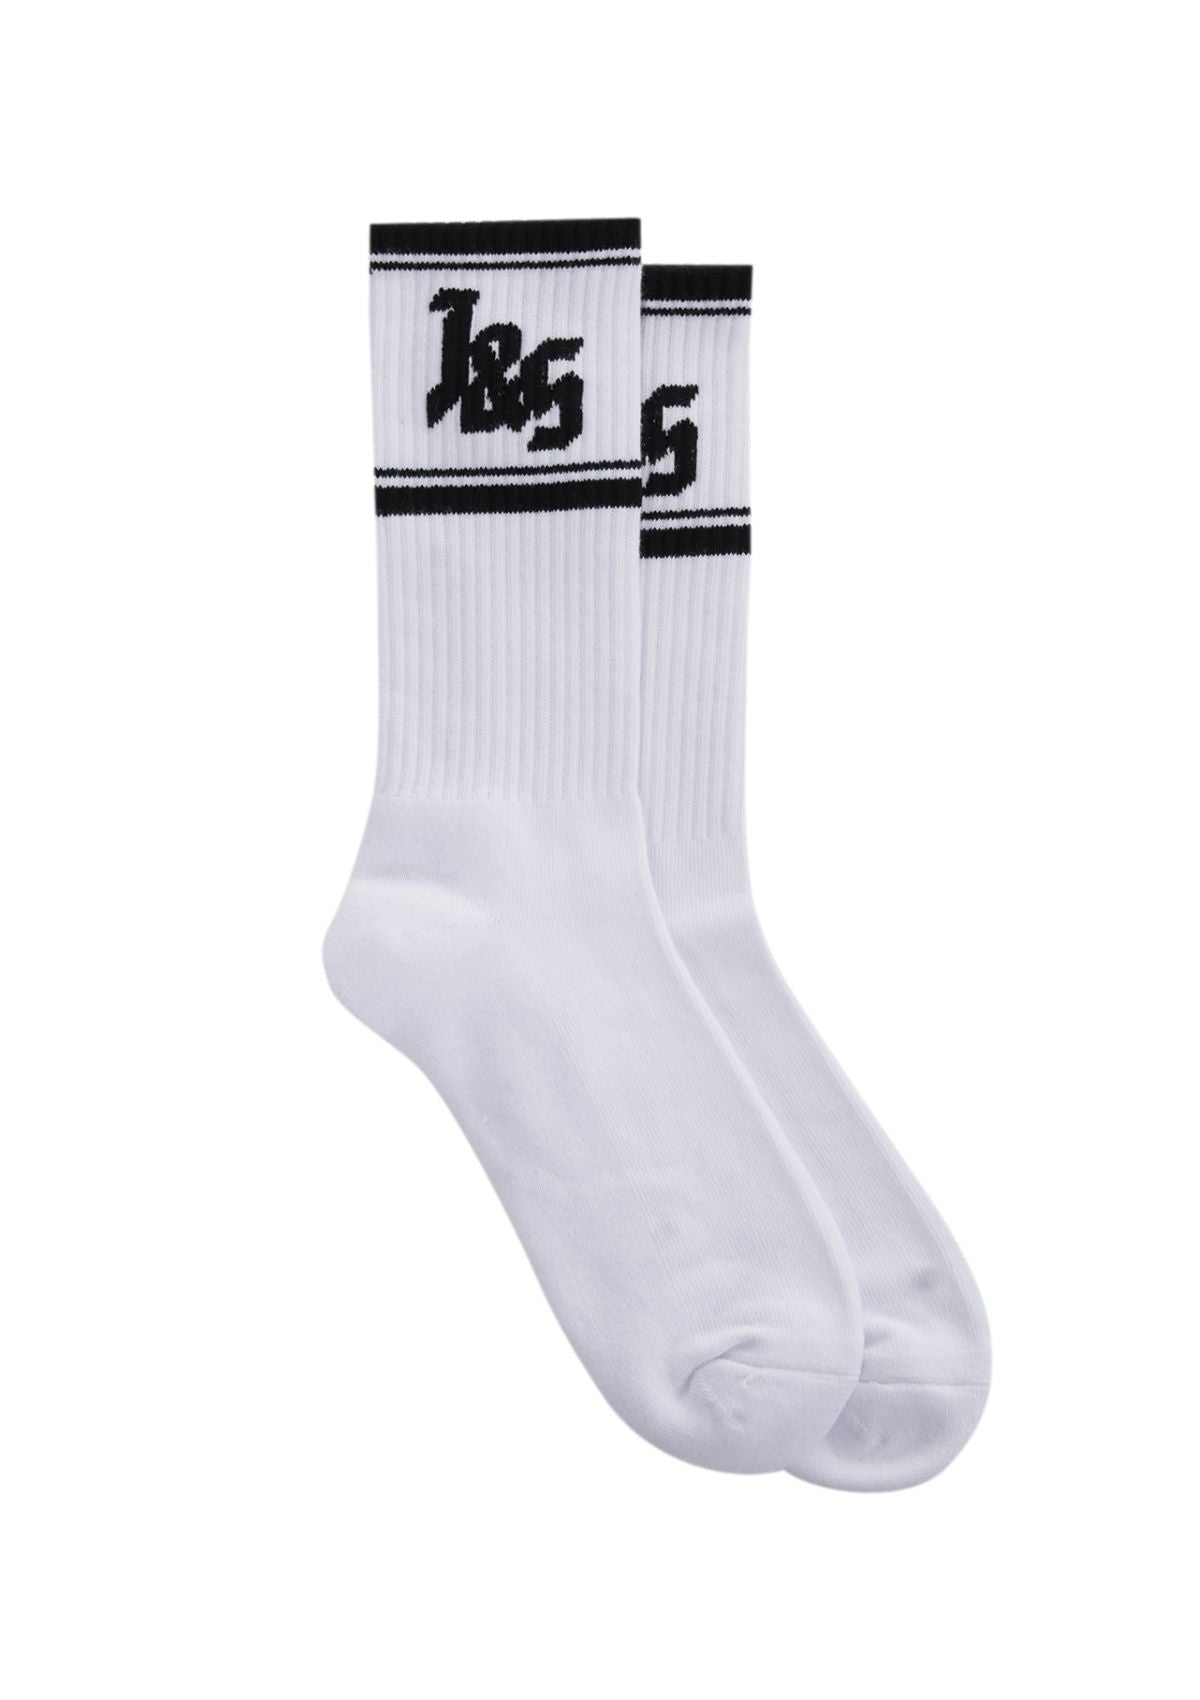 J&S Socks - White